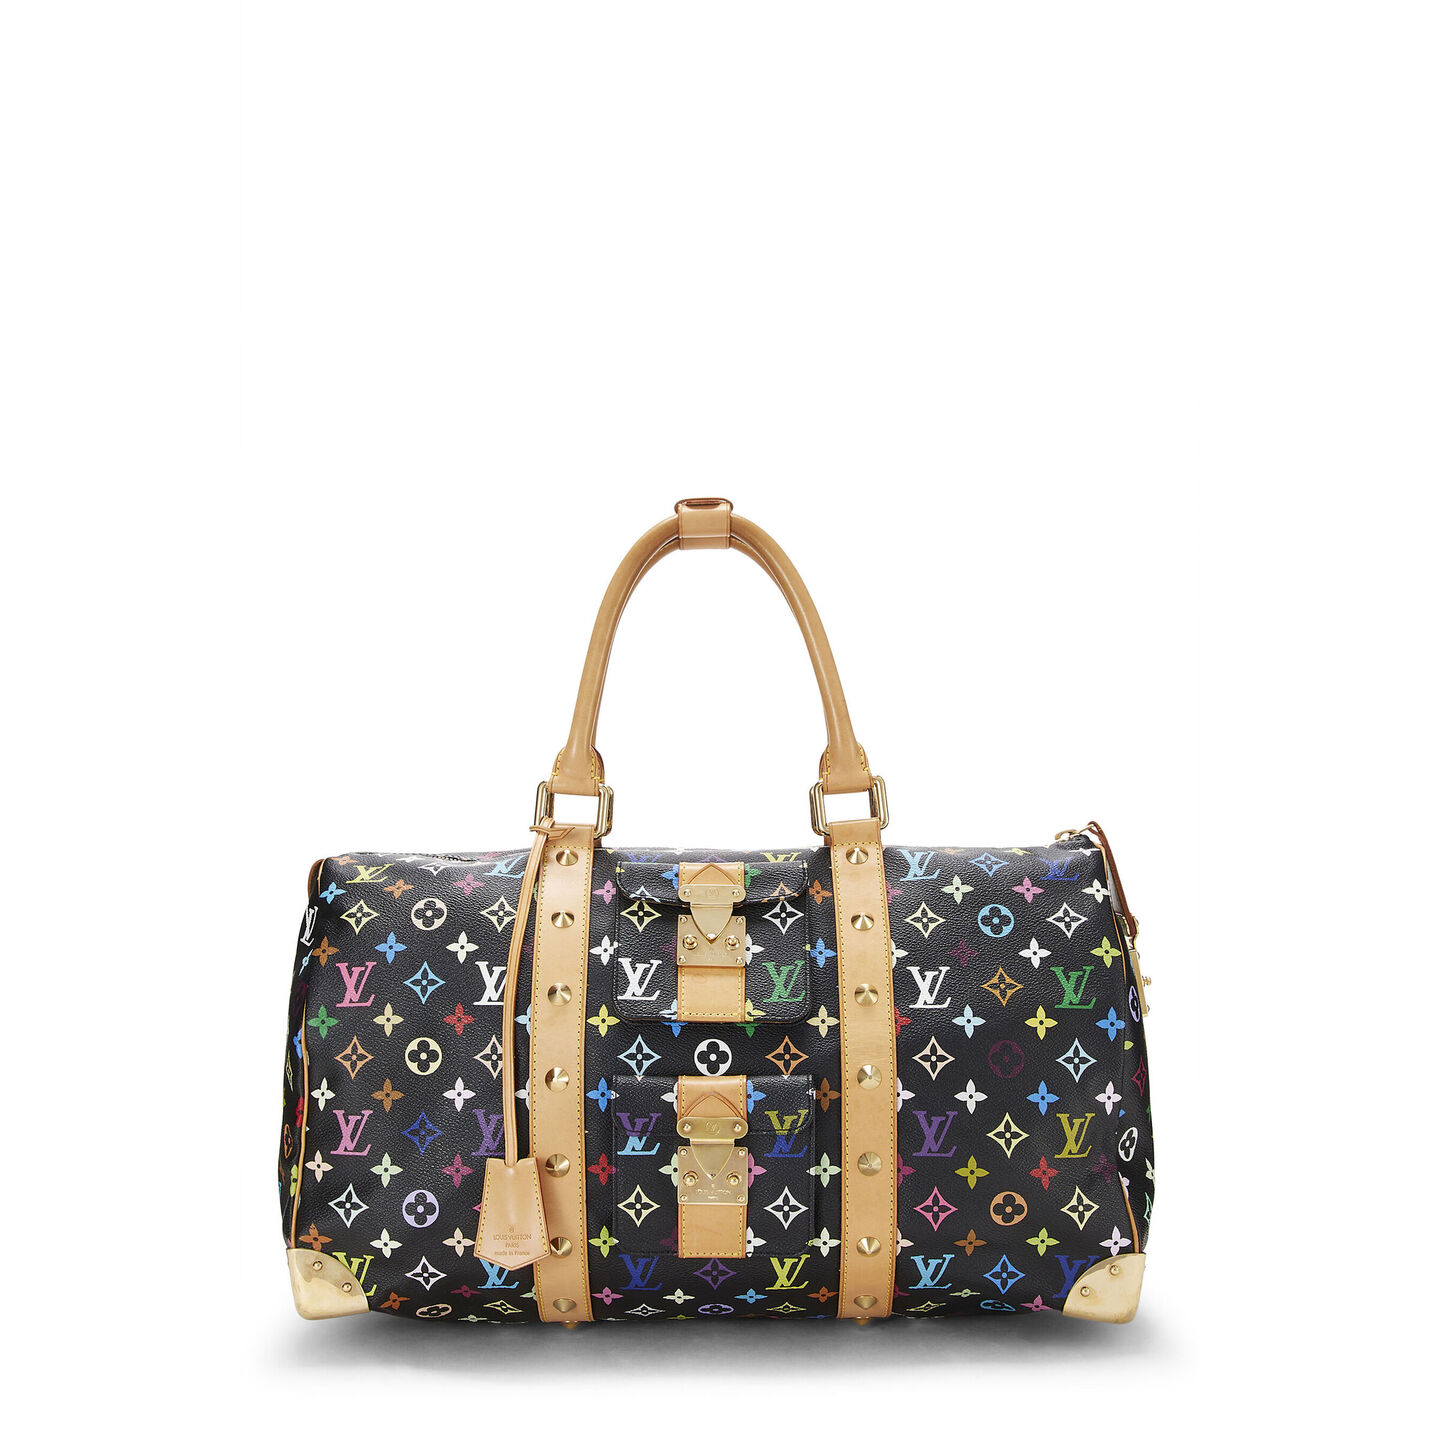 Louis Vuitton MACASSAR KEEPALL 55 ultimate duffle bag for men